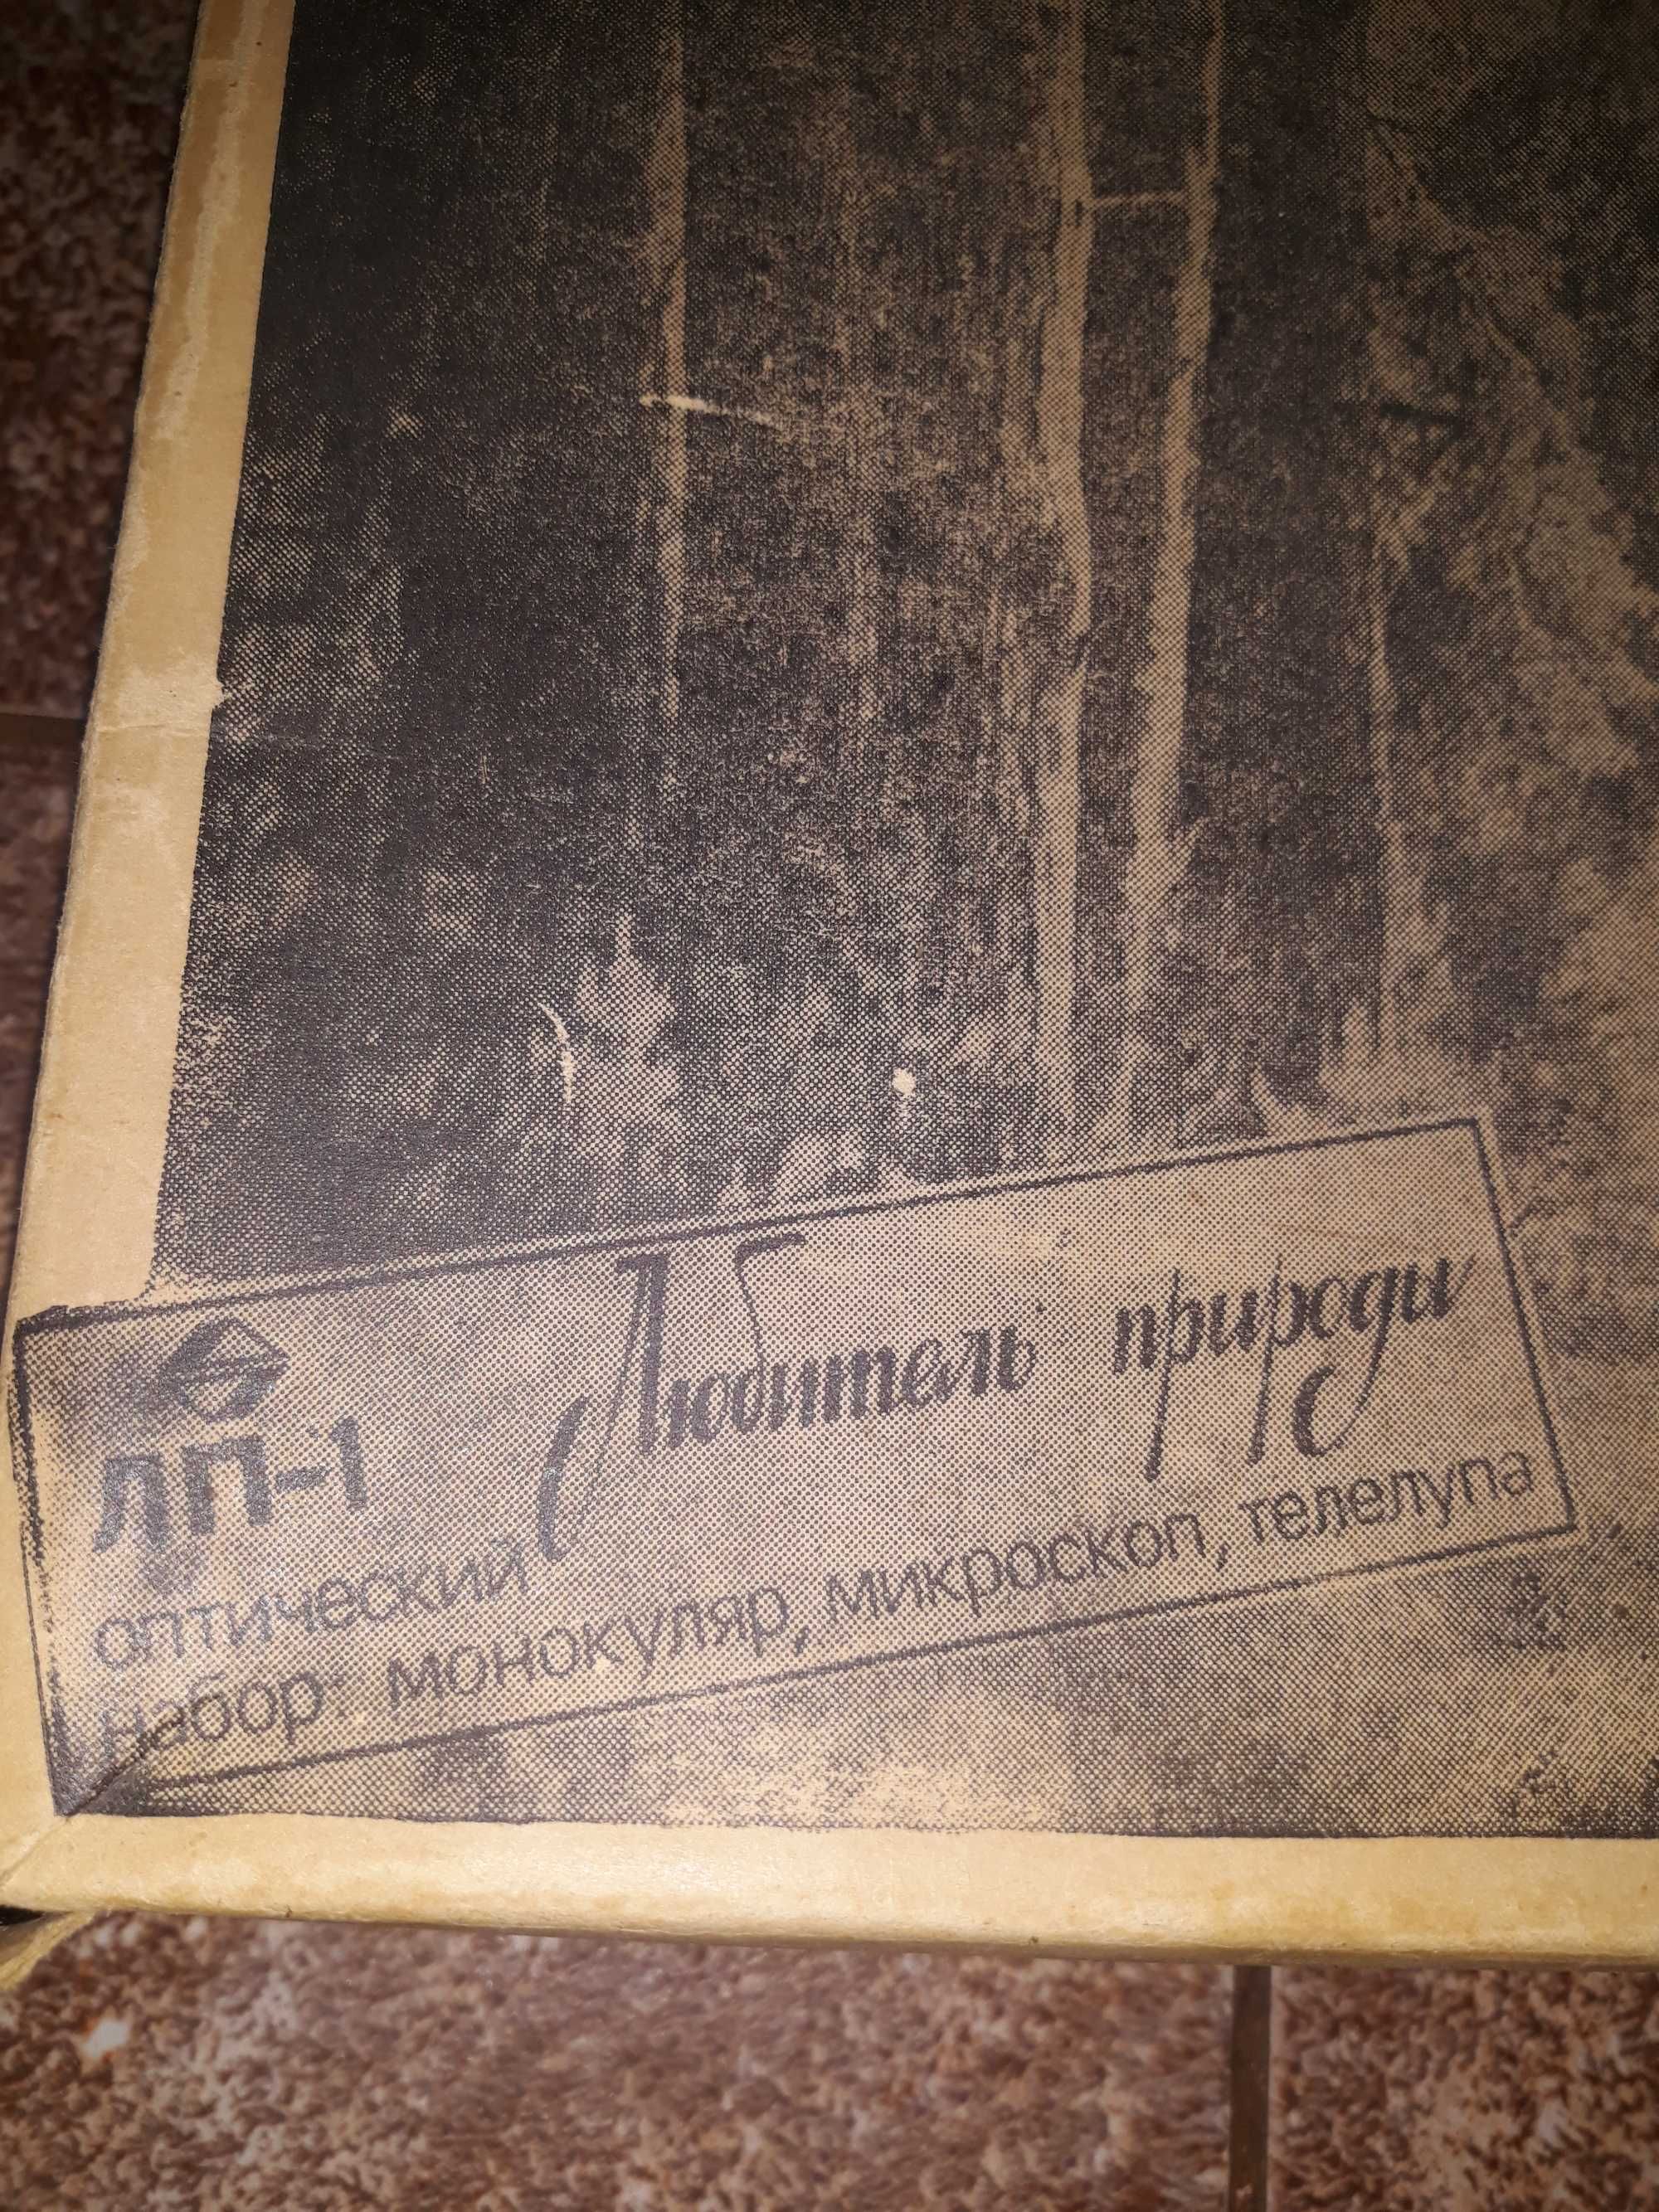 Оптический набор СОМЗ "Любитель природы" ЛП-1 1985 г/в (г. Салават)